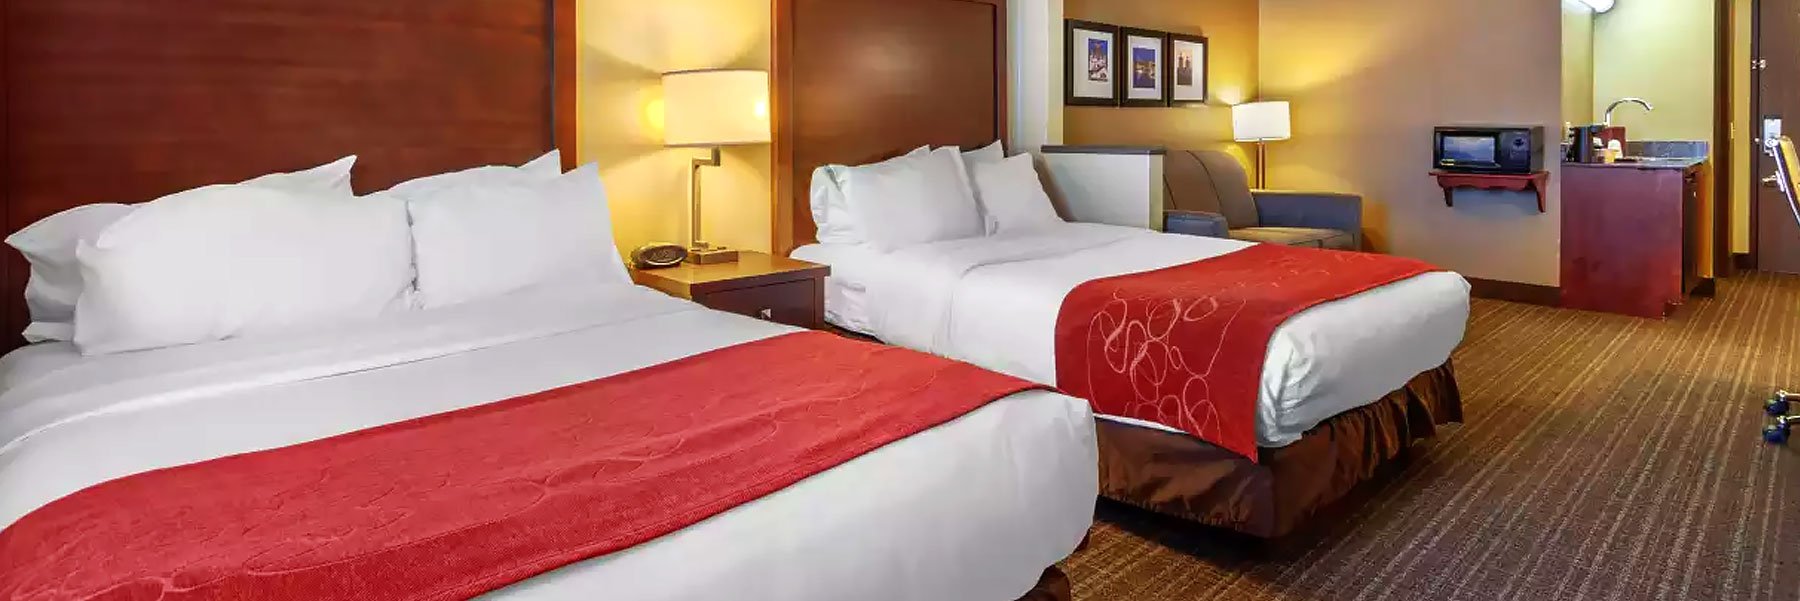 træk uld over øjnene Begge Specialitet Green Bay Hotel Accommodations | Comfort Suites Green Bay